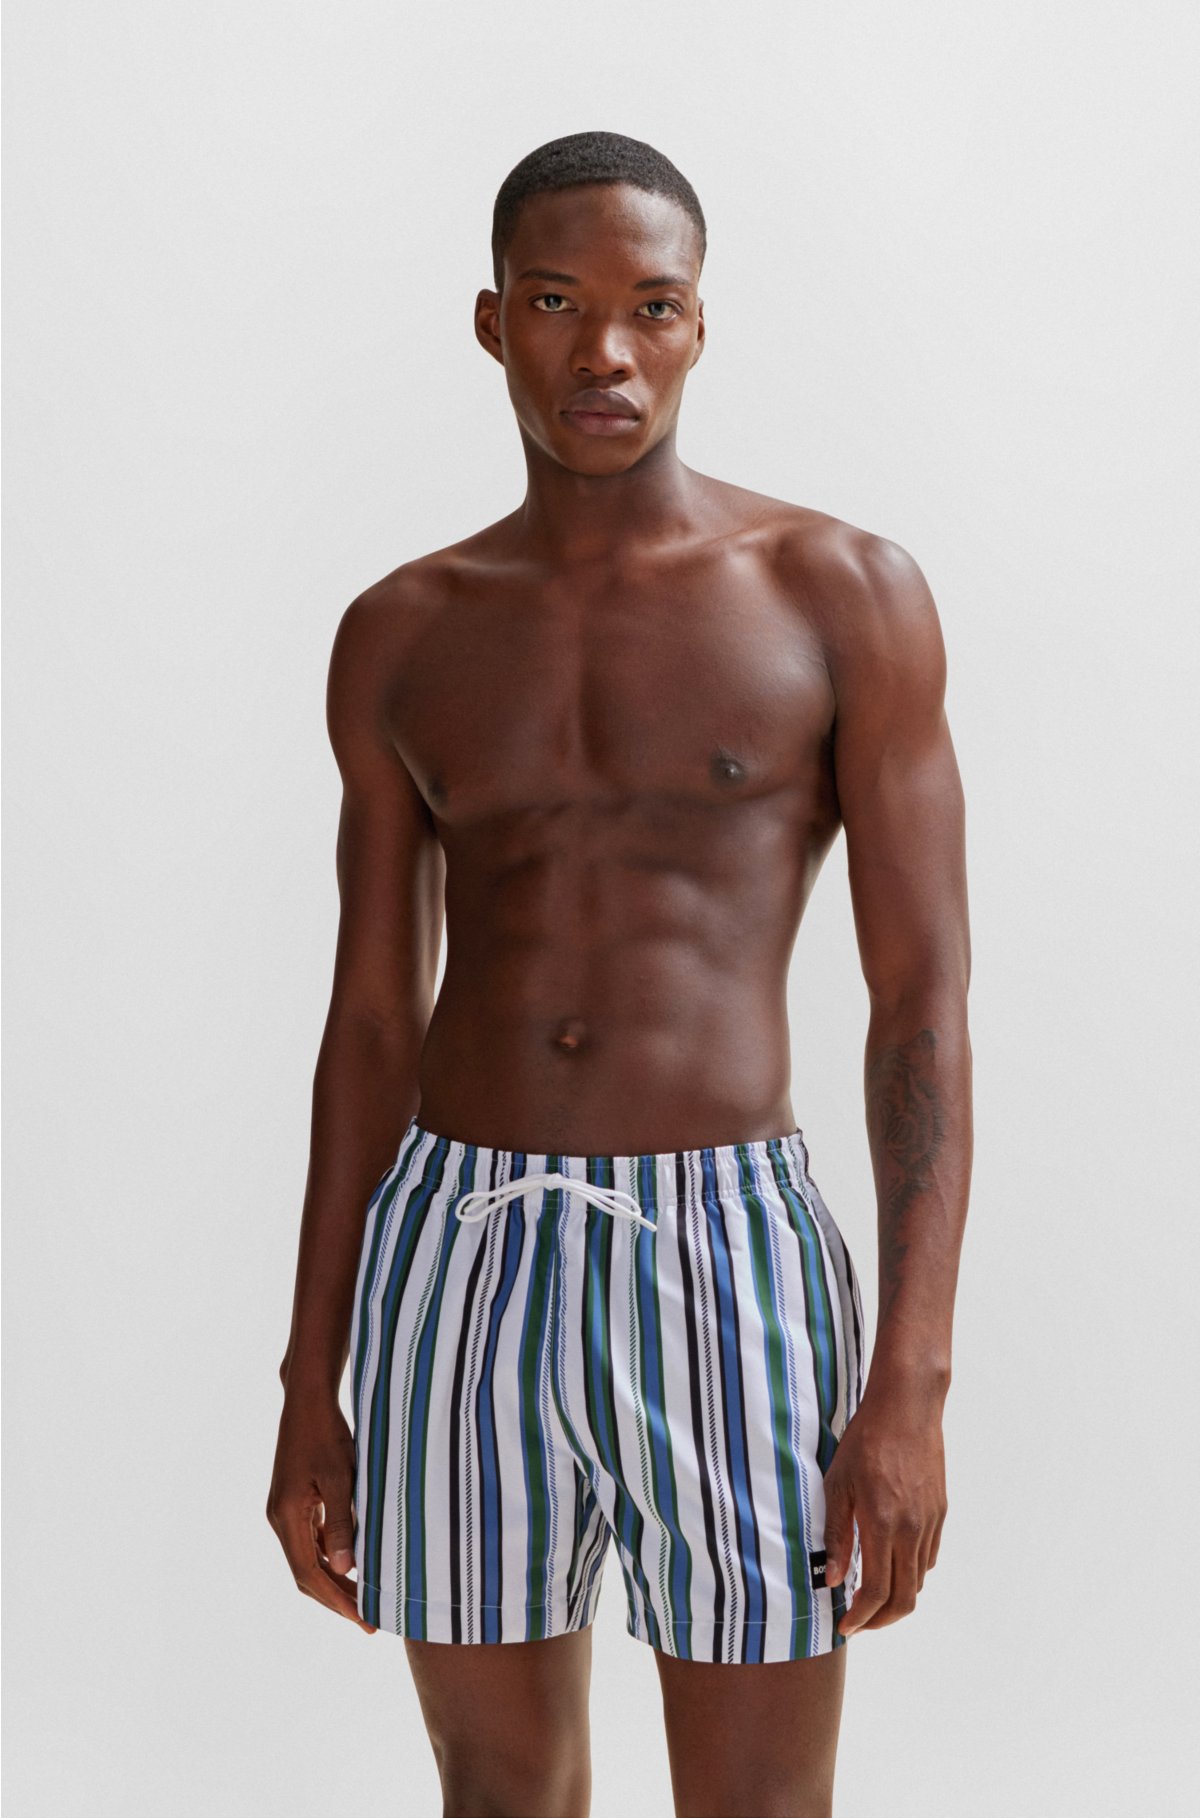 Striped Swim Trunks For Men